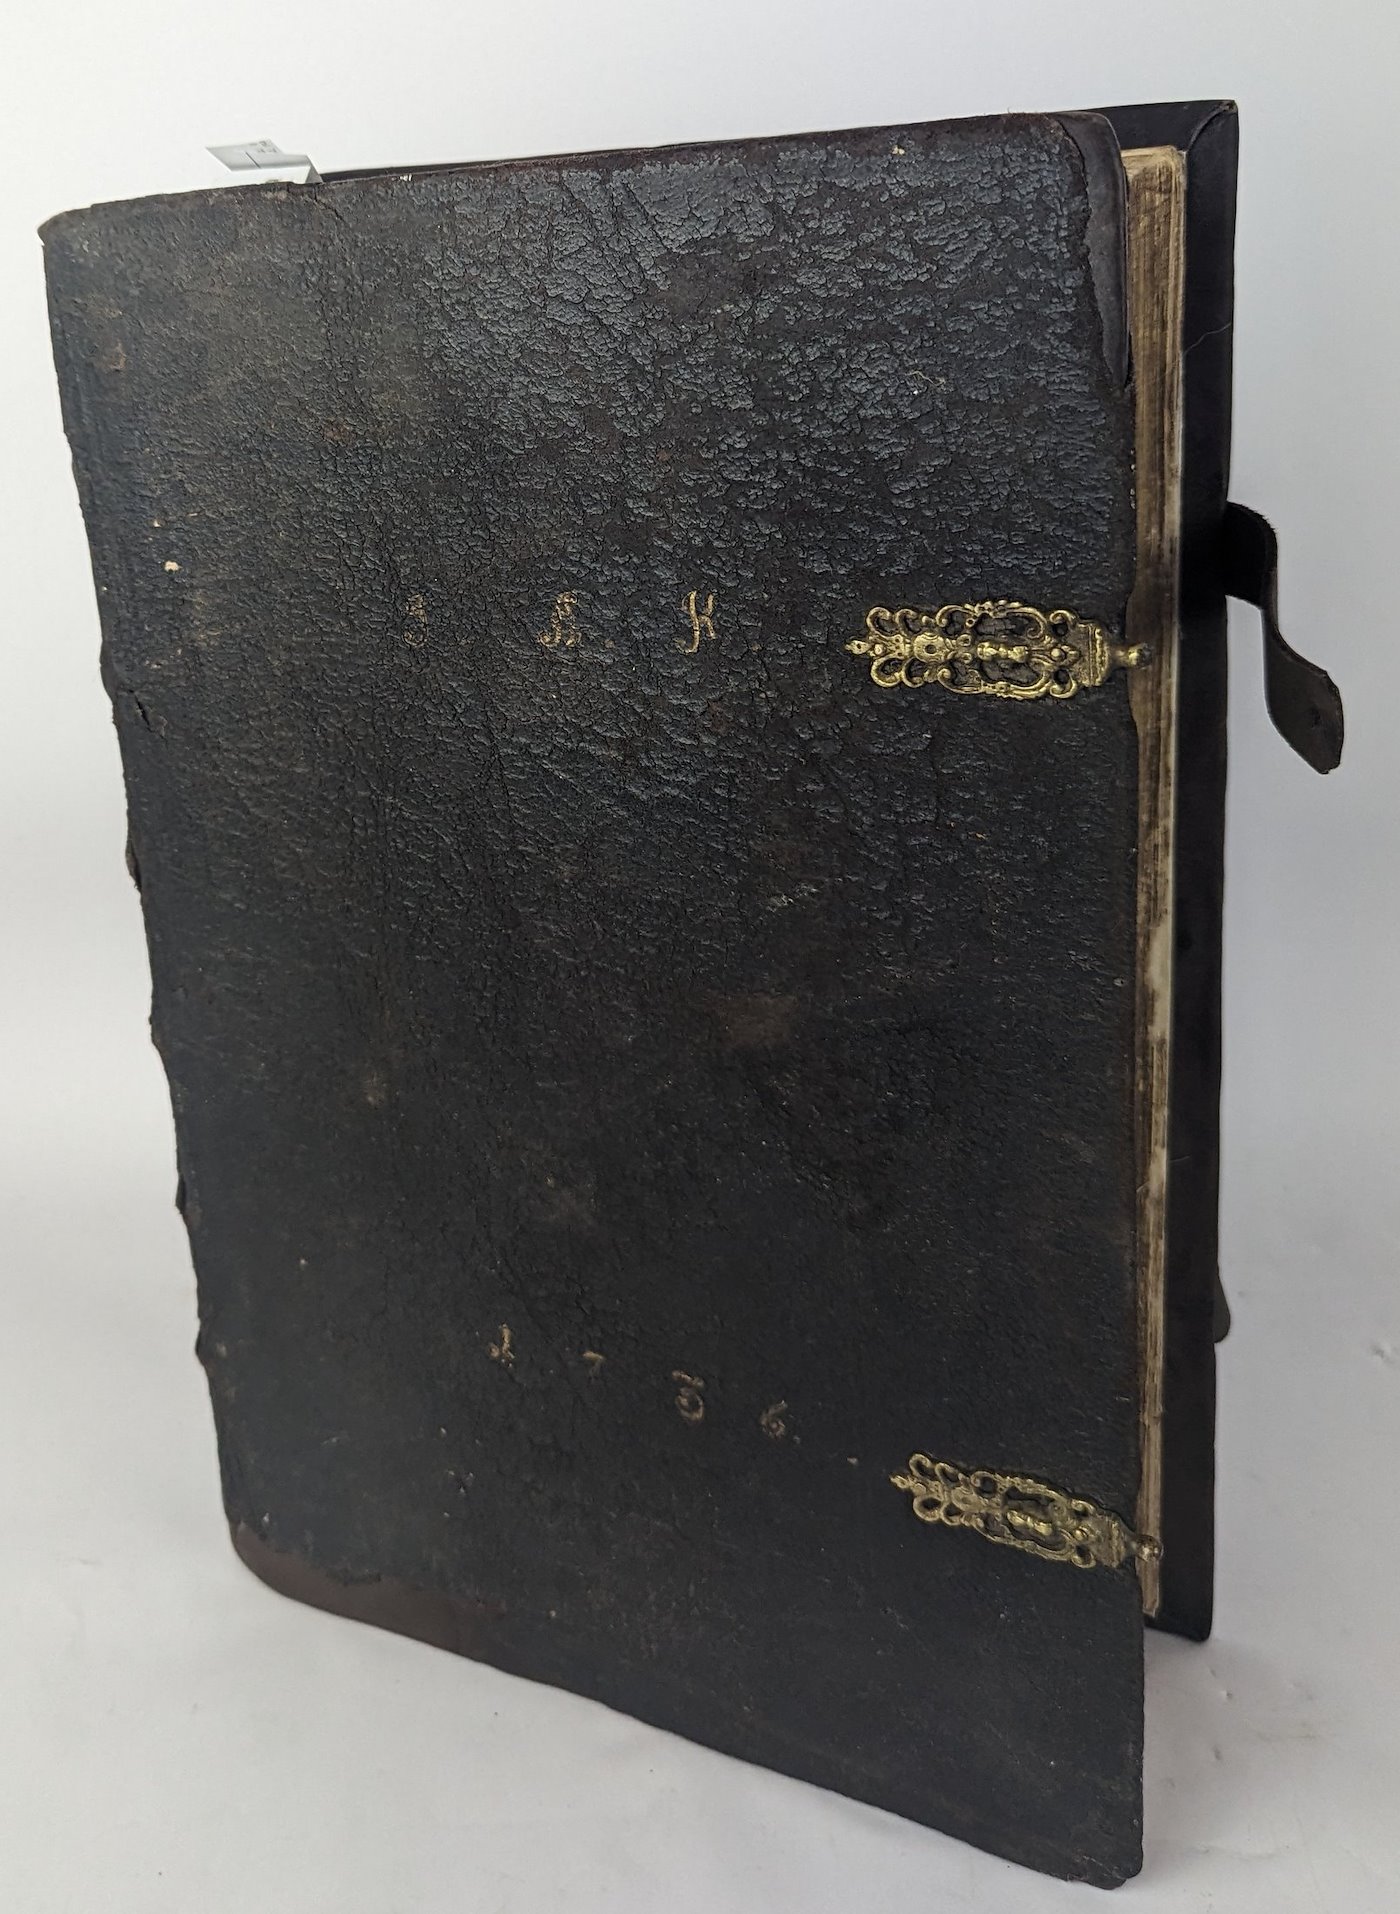 Martin Luther - Biblia, das ist die Ganze Heilige Schrift